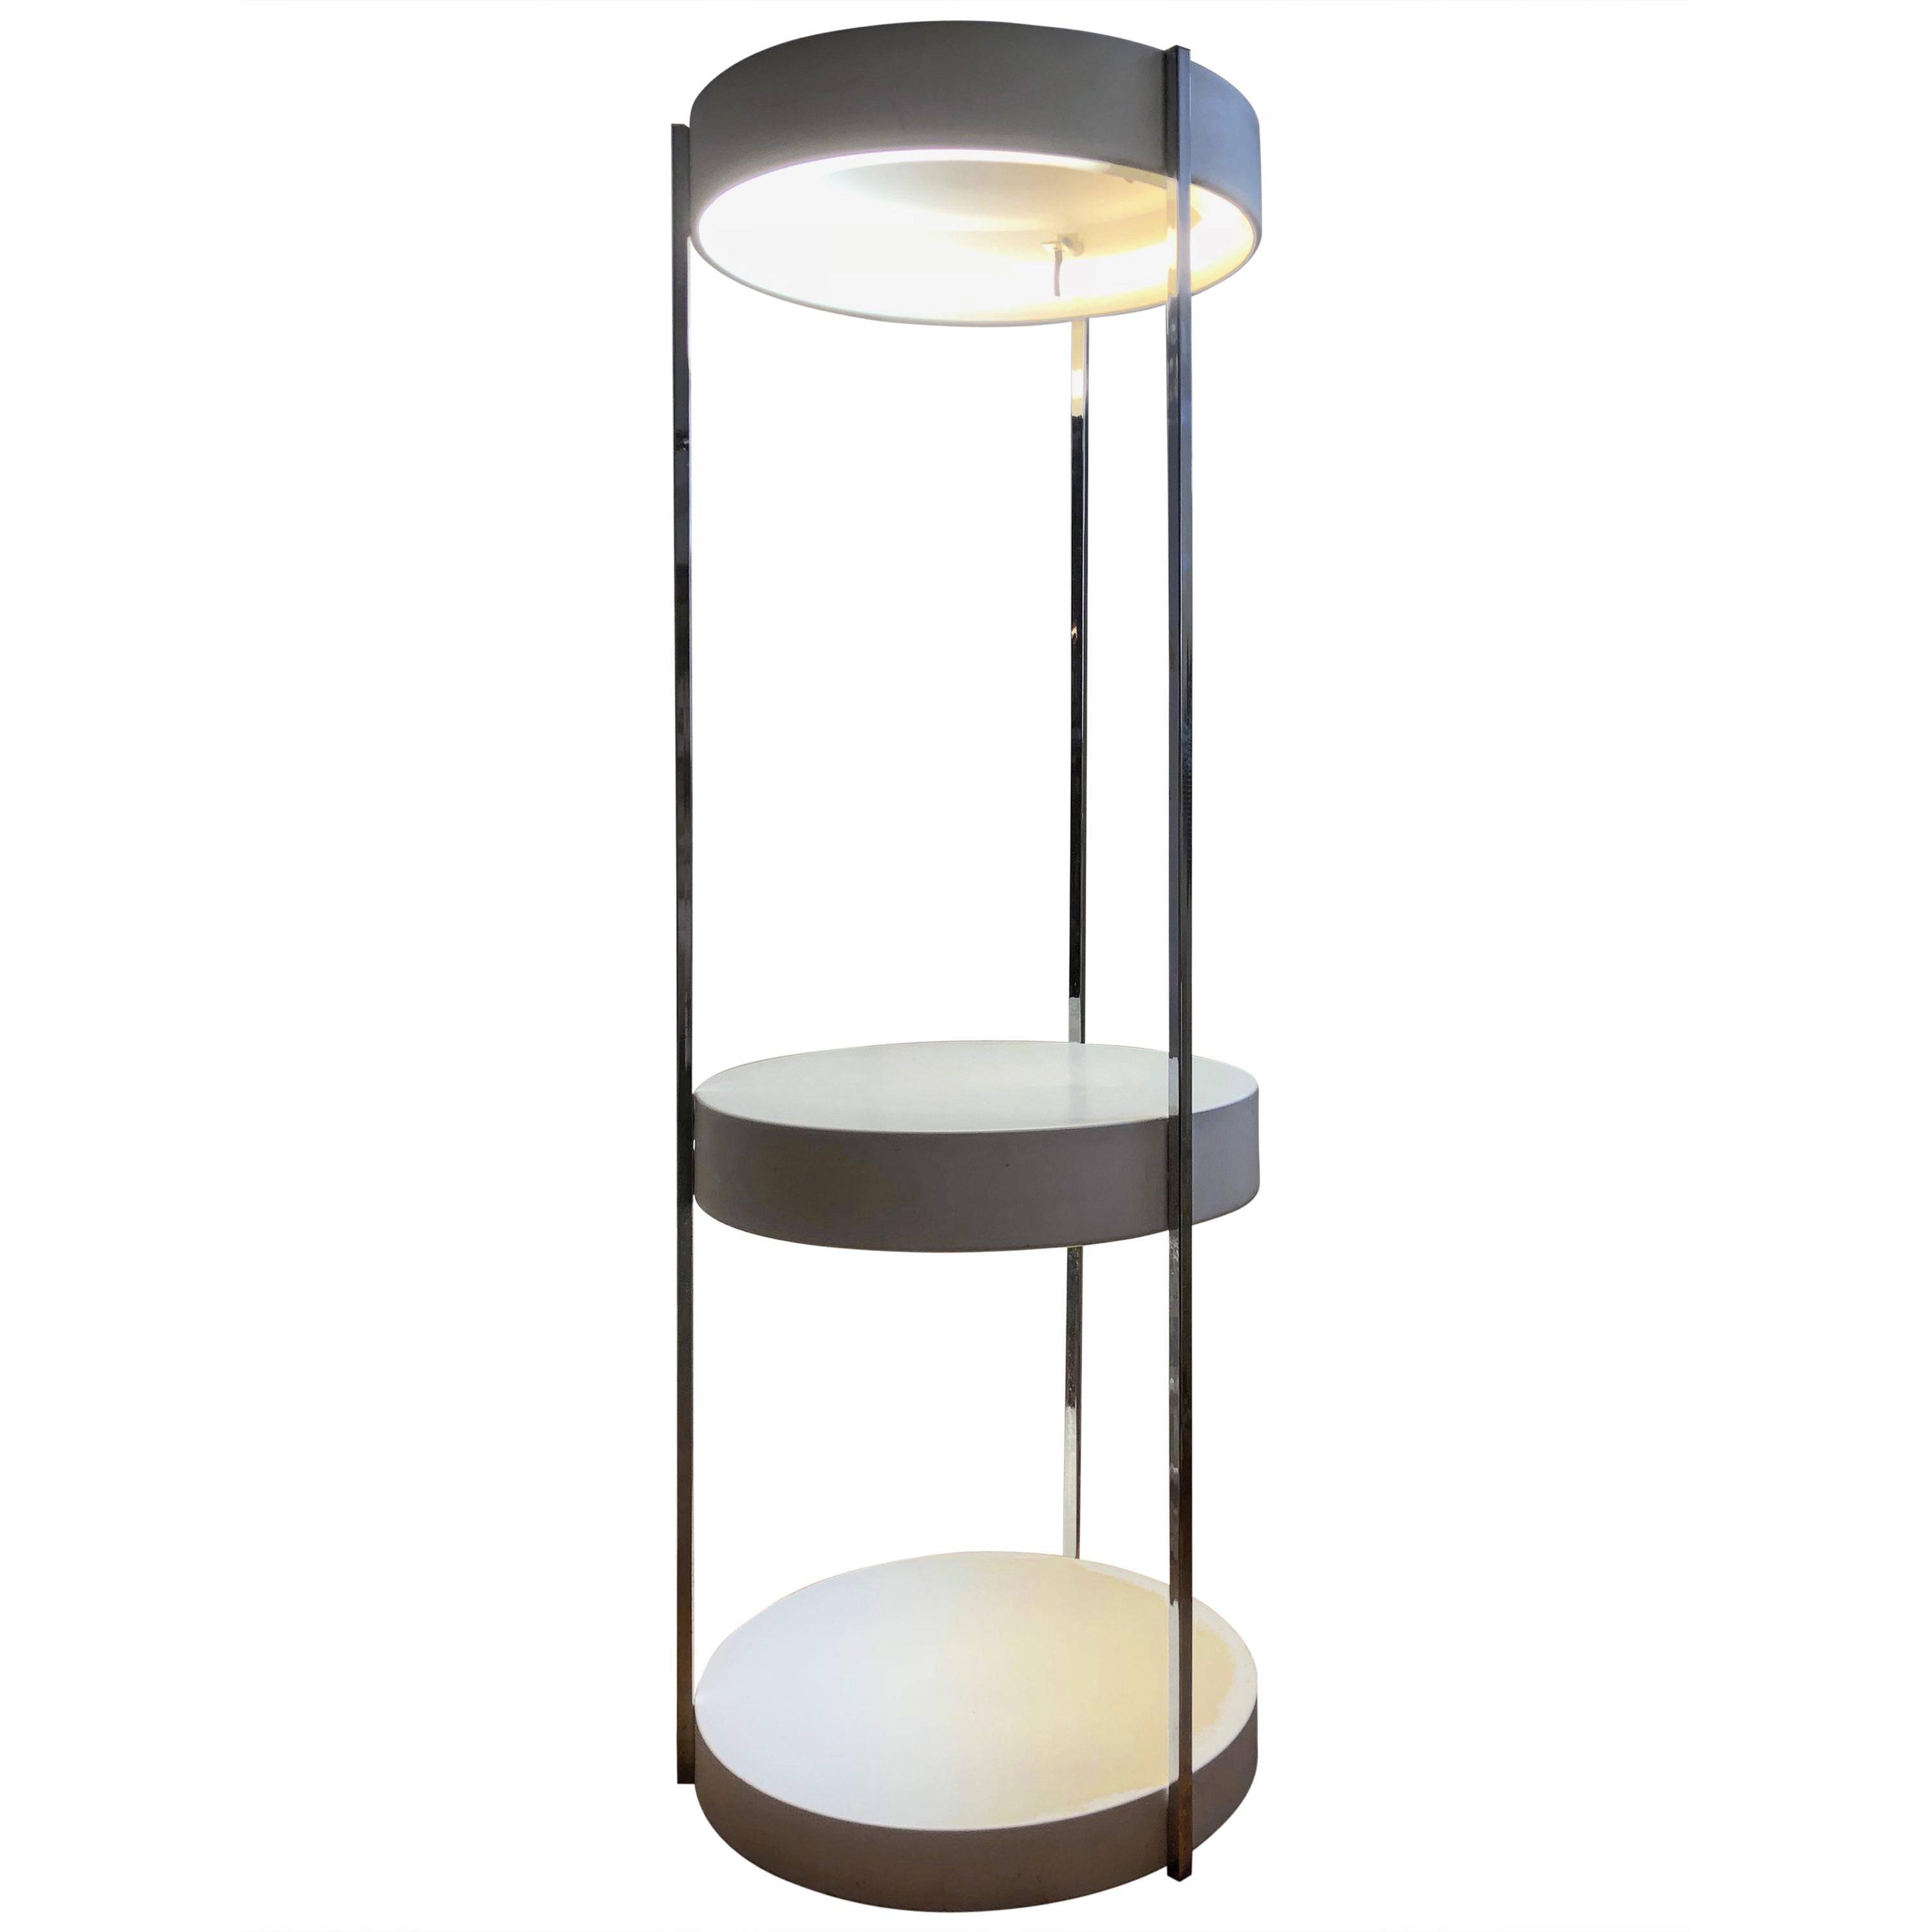  Kovaks Enameled Steel Floor Lamp Shelving & Display Etagere Mid-Century Minimal For Sale